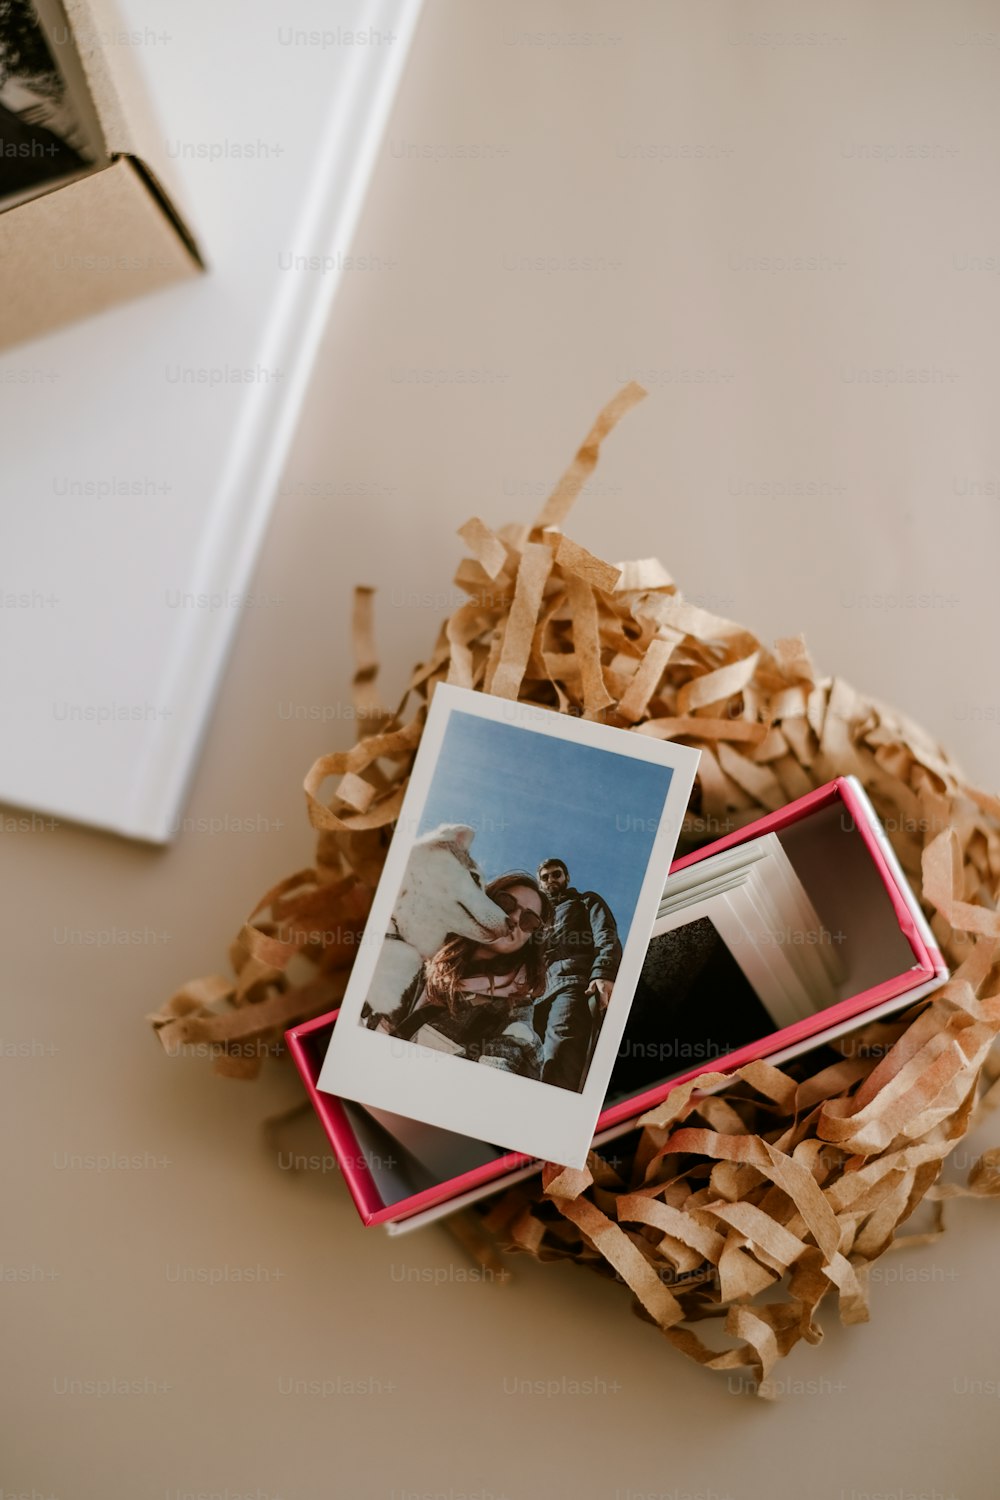 ein paar Polaroid-Bilder, die auf einem Haufen zerkleinerten Holzes sitzen